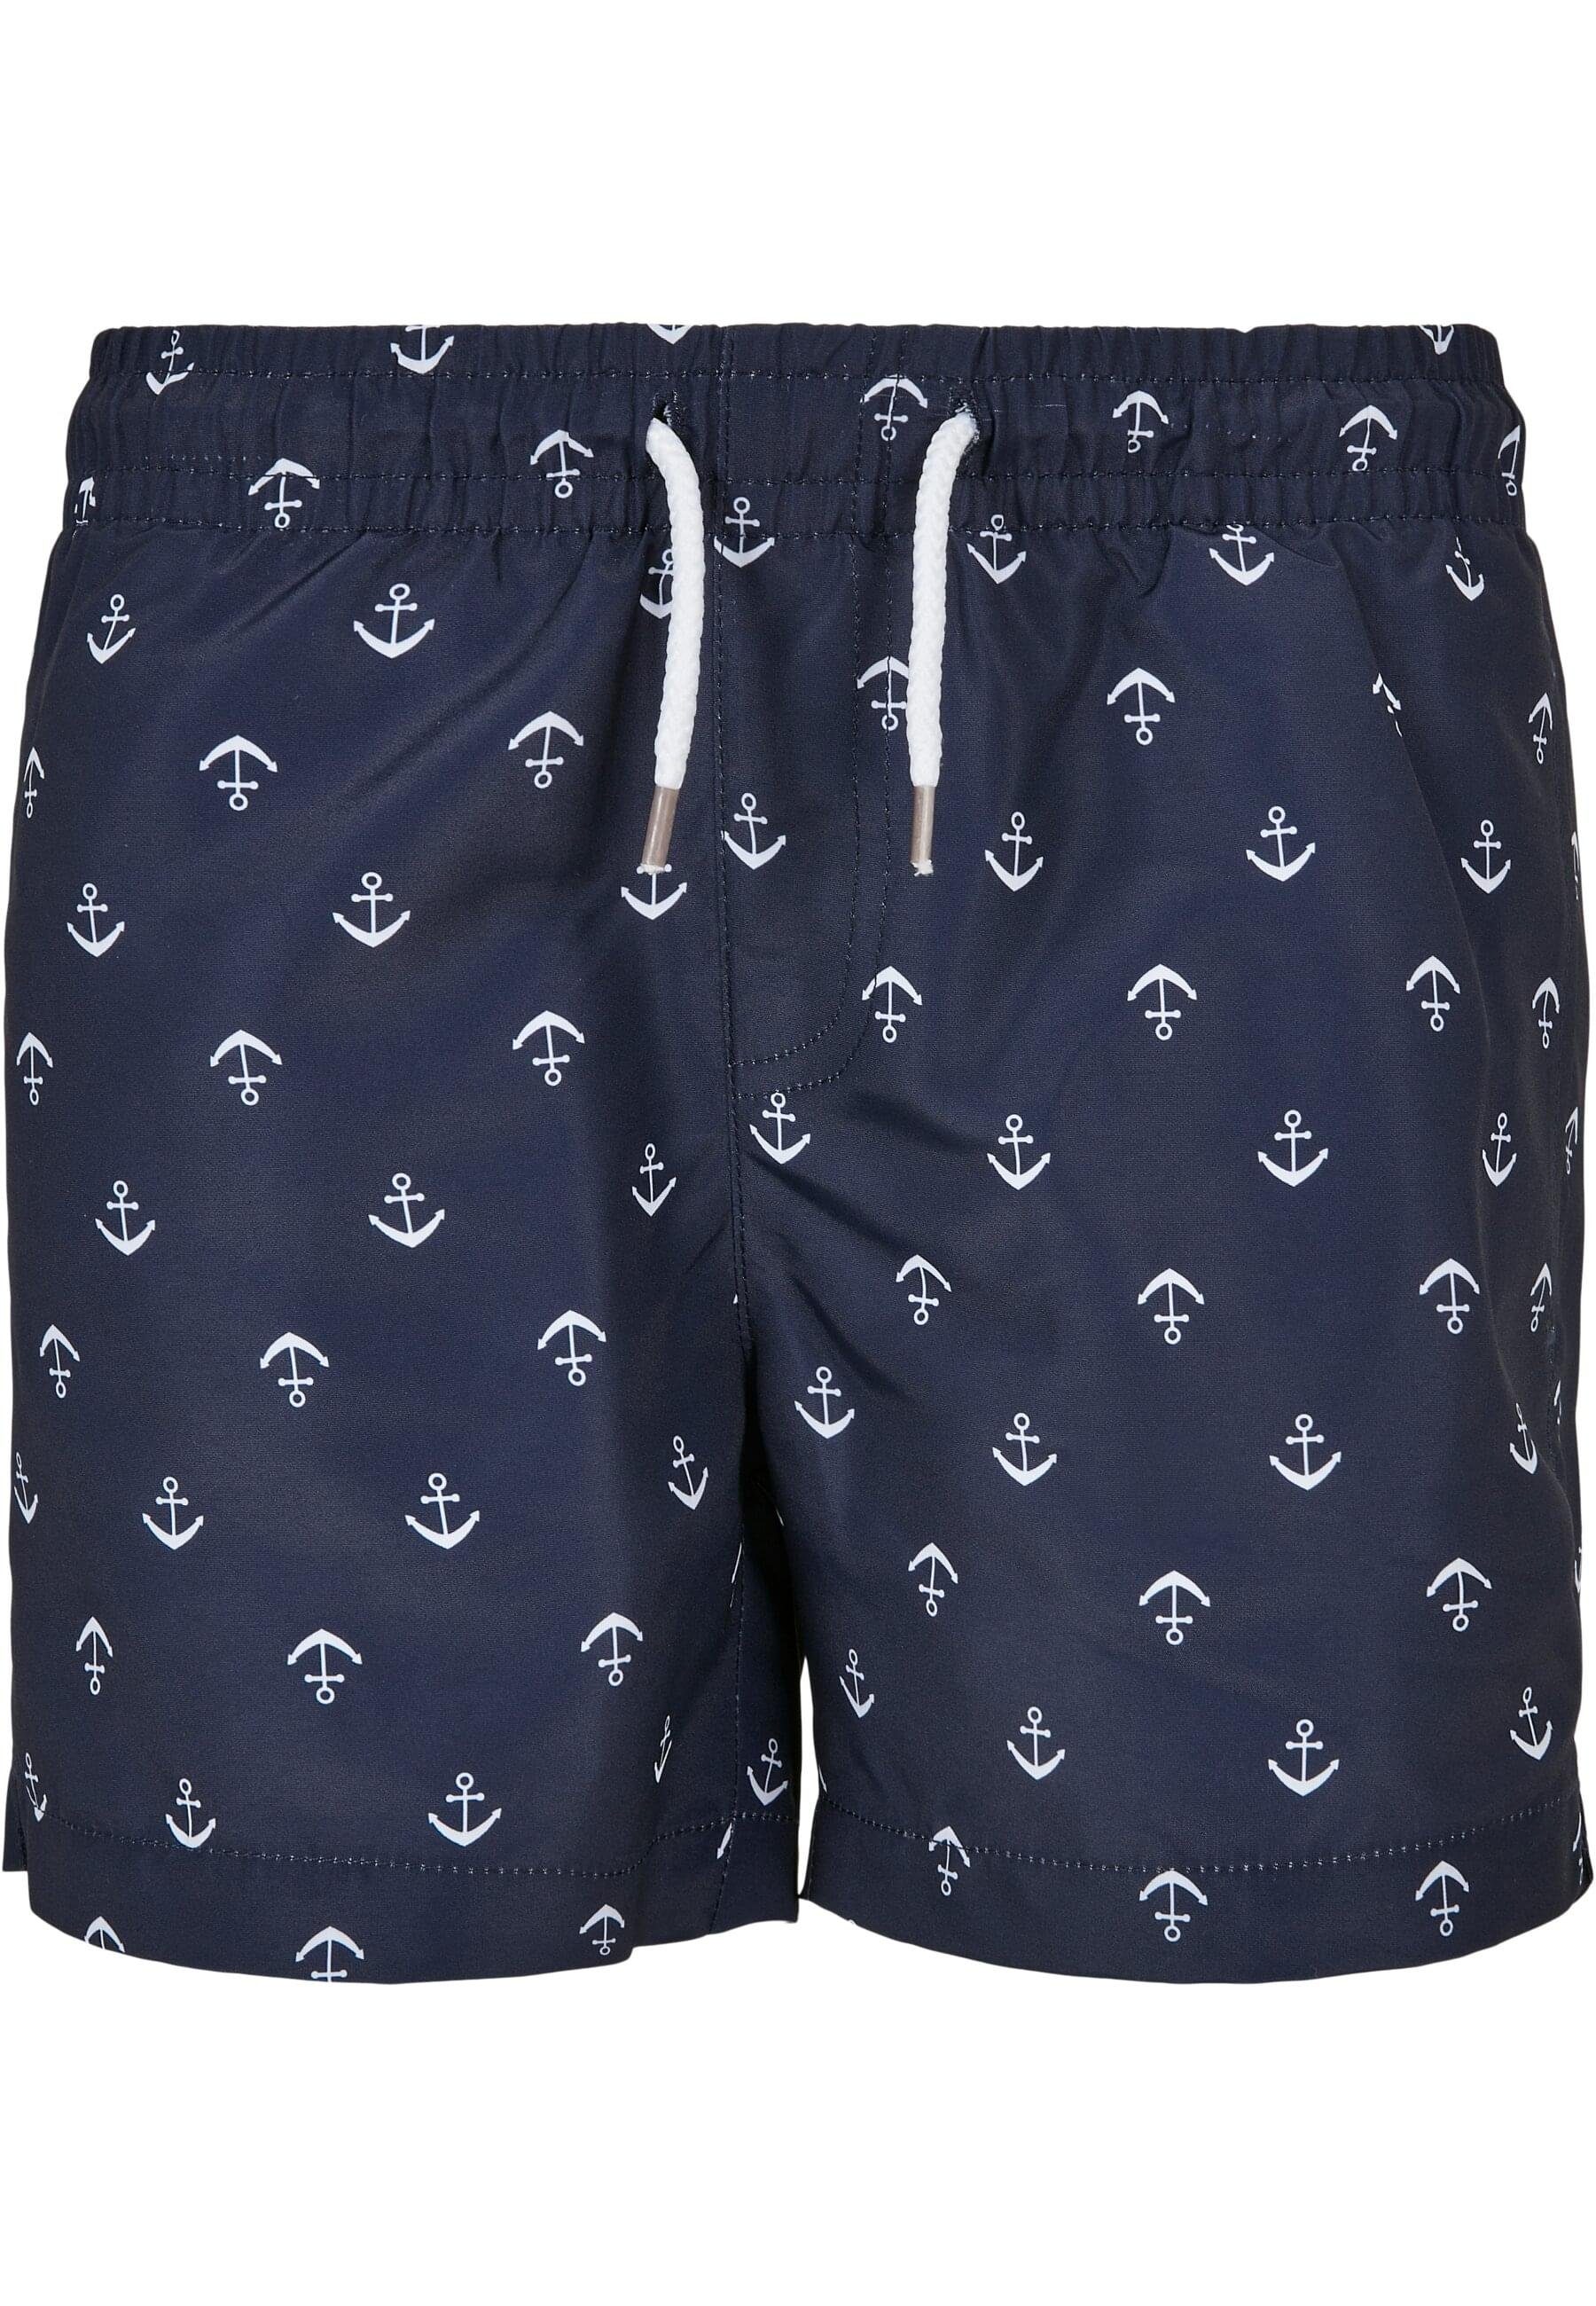 URBAN CLASSICS Badeshorts Pattern anchor/navy Herren Boys Swim Shorts